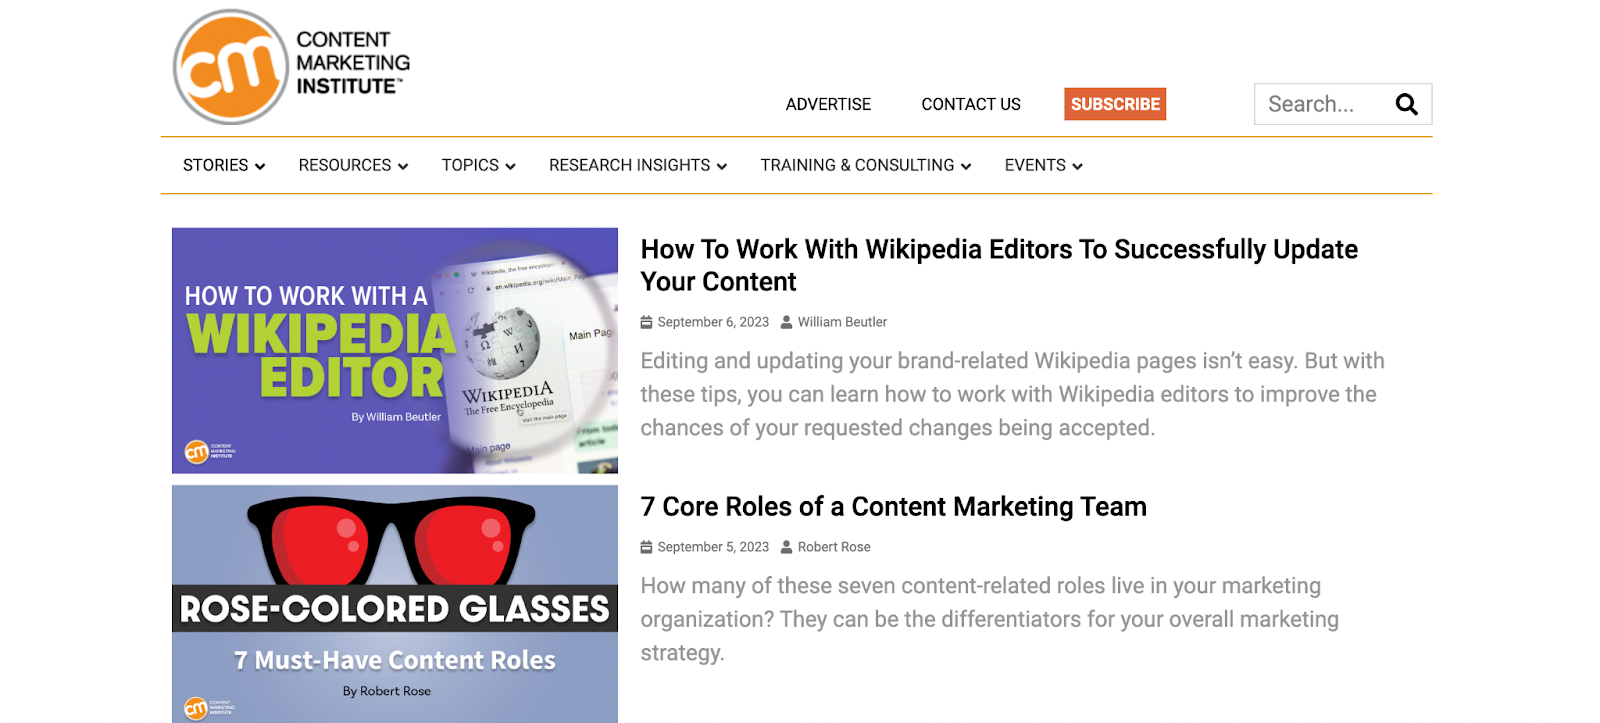 Content Marketing Institute's blog